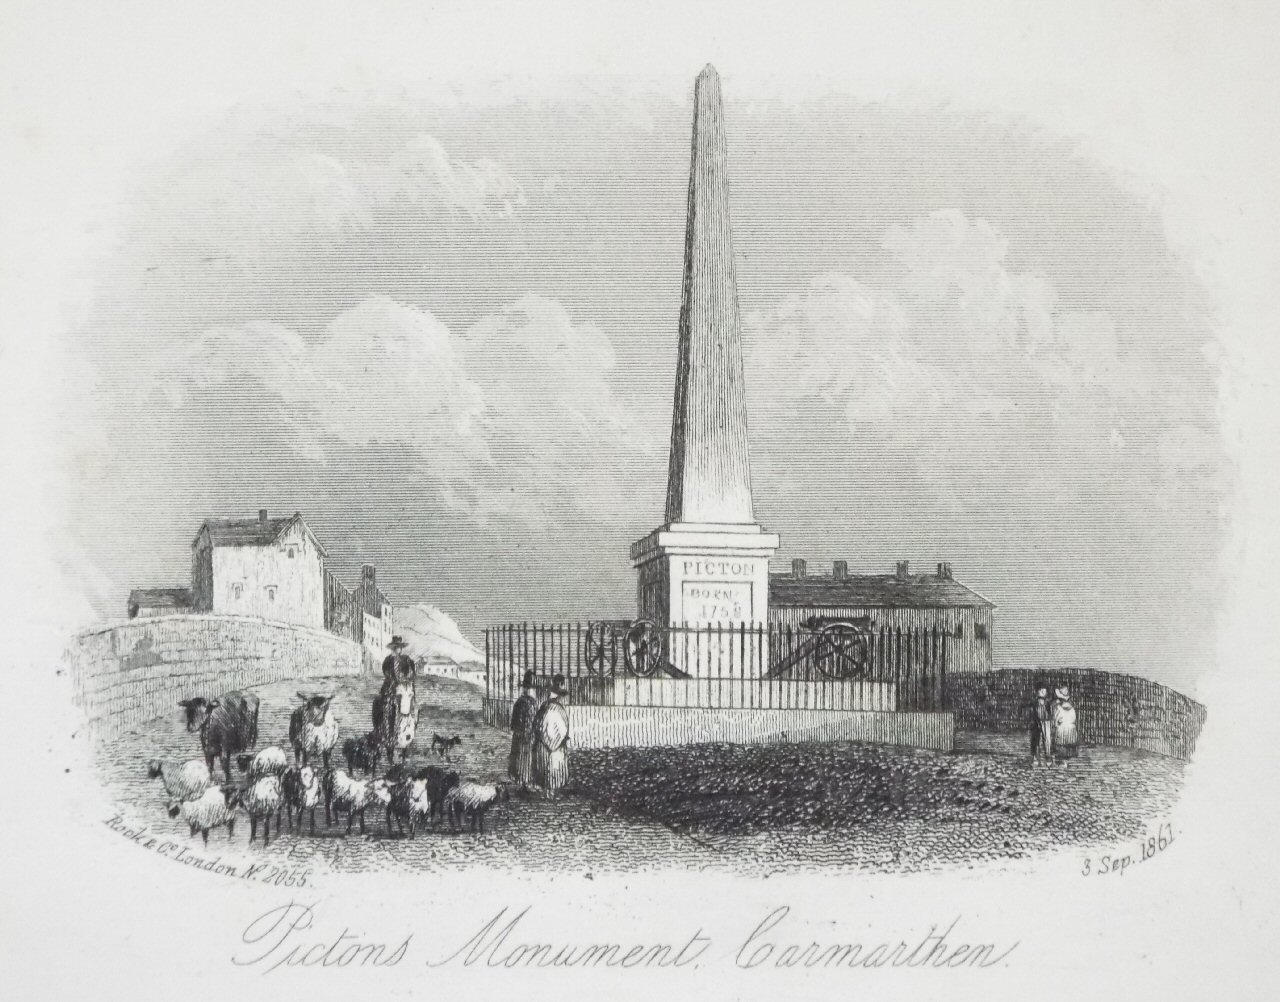 Steel Vignette - Pictons Monument, Carmarthen - Rock